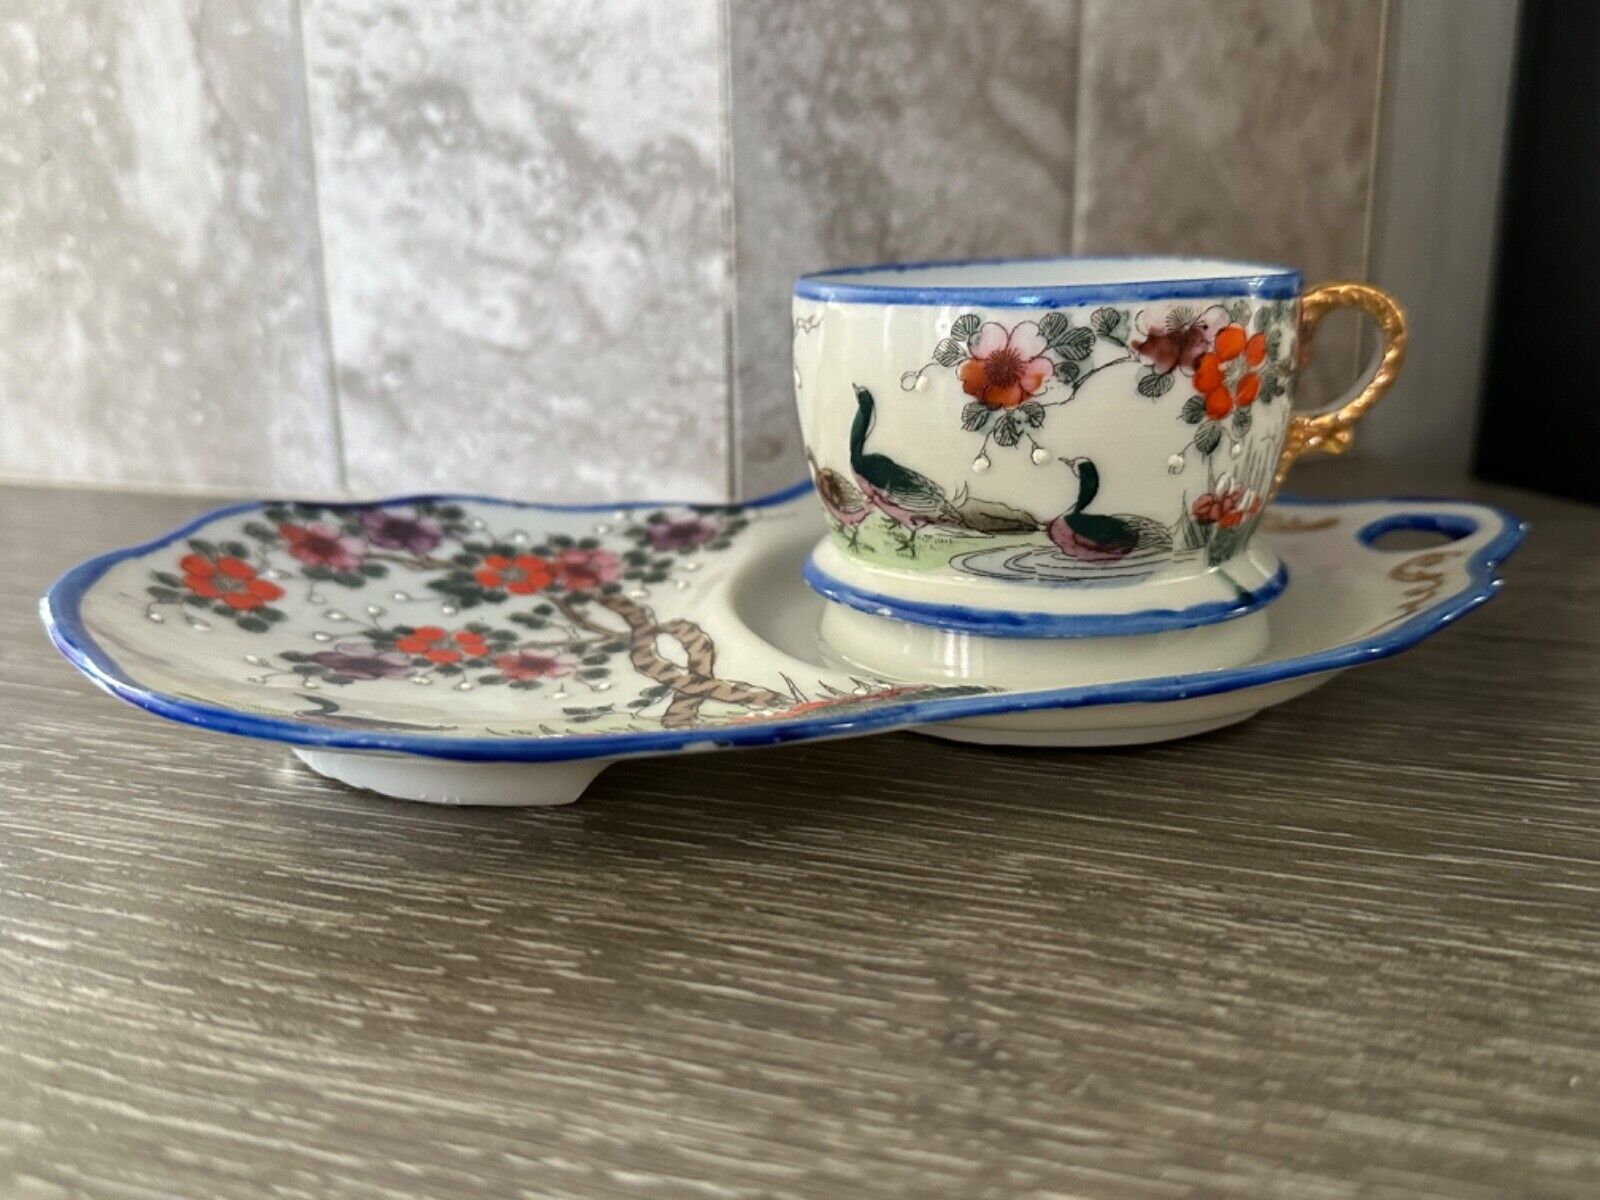 Vintage Asian Porcelain Tea and Snack Server Made in Japan